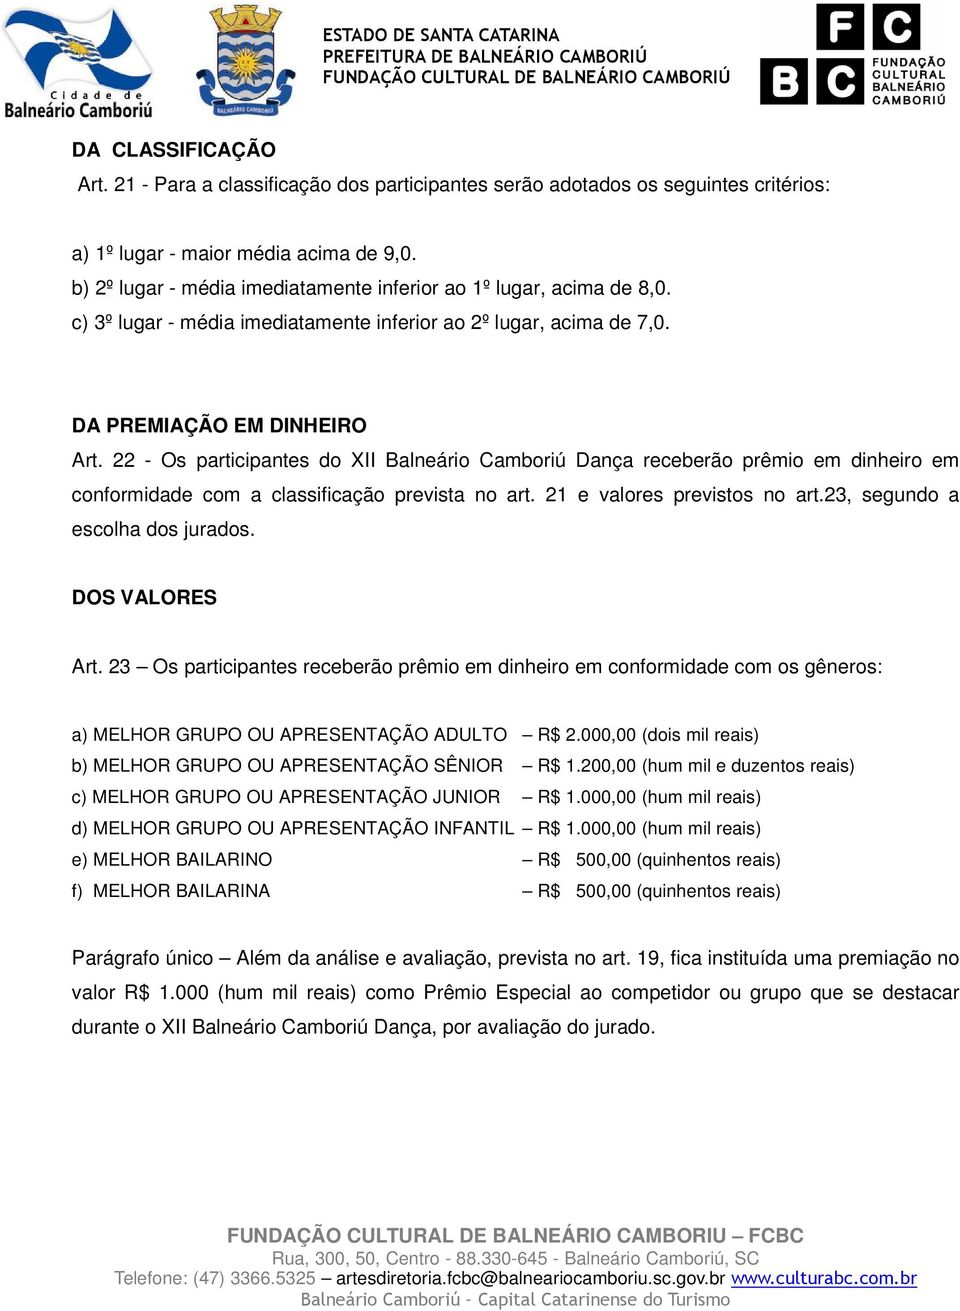 22 - Os participantes do XII Balneário Camboriú Dança receberão prêmio em dinheiro em conformidade com a classificação prevista no art. 21 e valores previstos no art.23, segundo a escolha dos jurados.